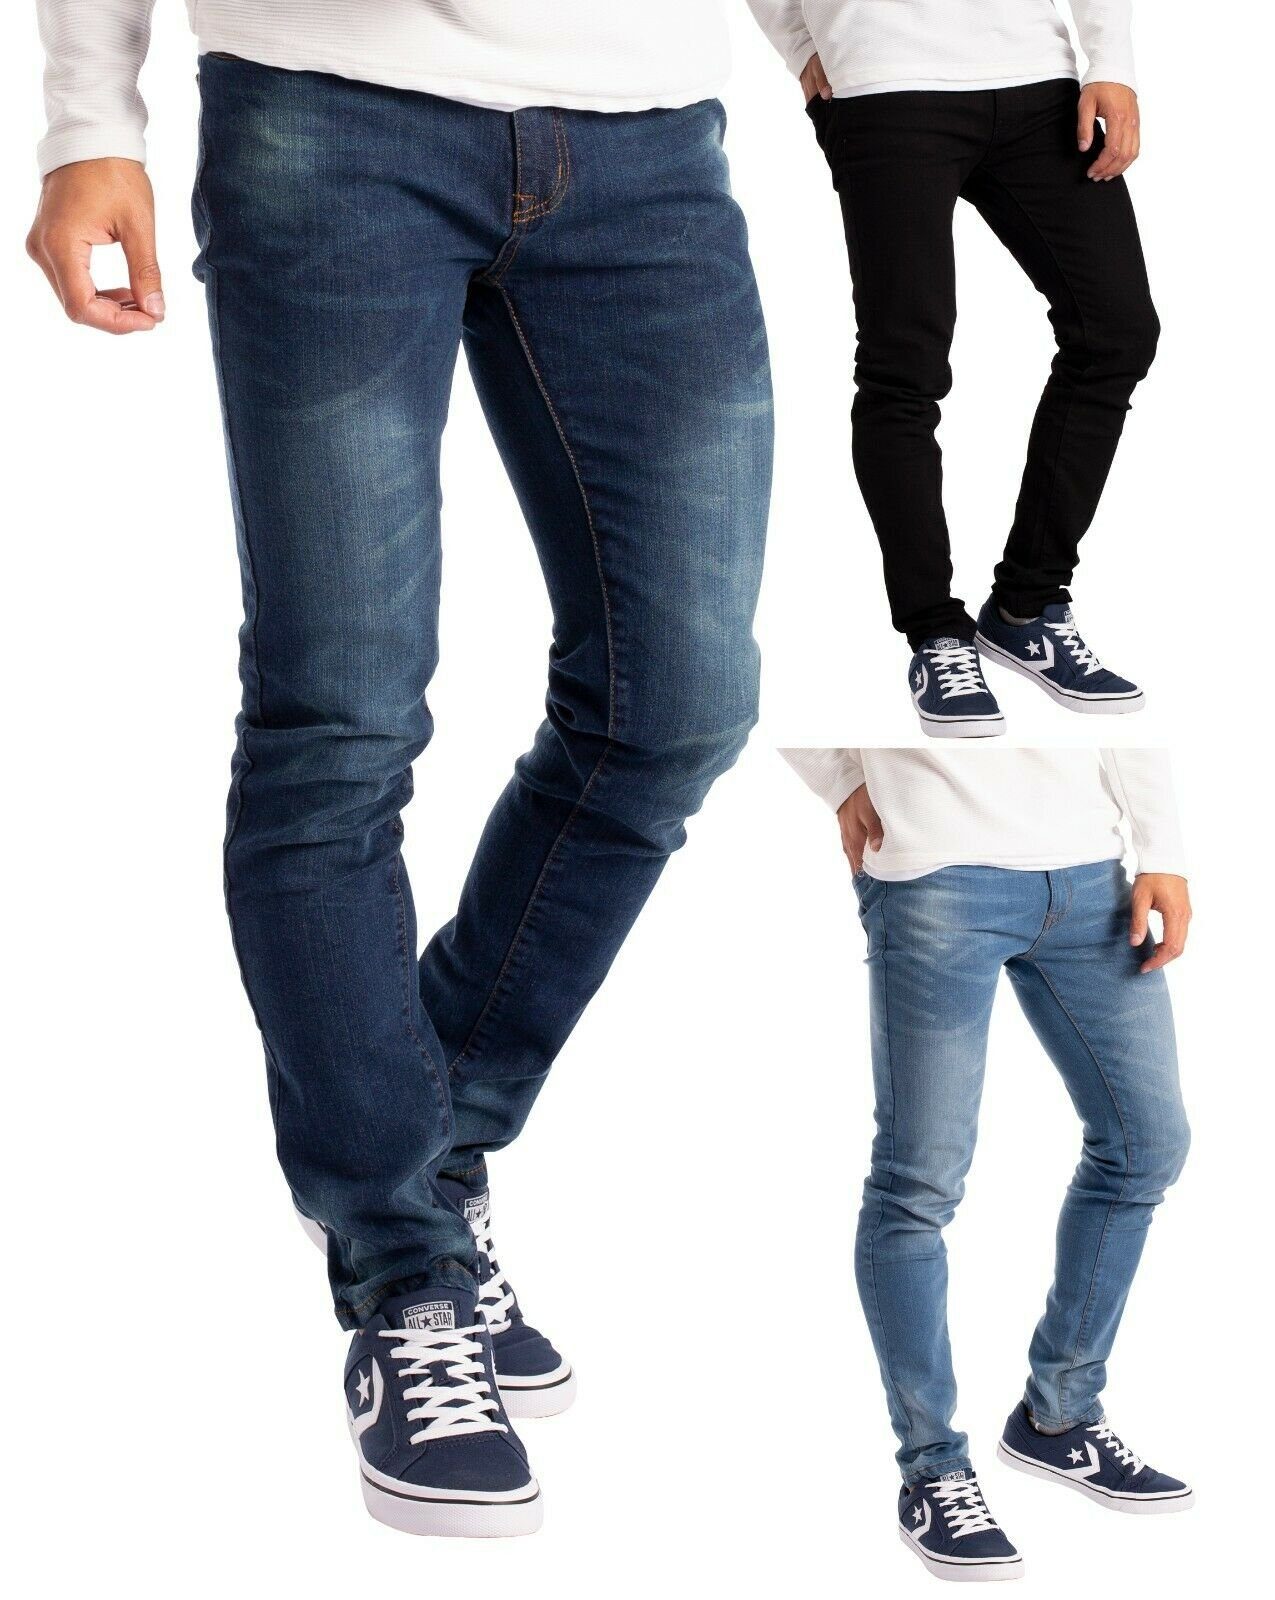 BLACK FRIDAY - BlauerHafen Slim-fit-Jeans »Herren Slim Fit Jeanshose  Stretch Designer Hose Super Flex Denim Pants« Alle Größen von 28-40,  erhältlich 30, 32 & 34 Beinlänge, 98% Baumwolle, 2% Stretch, 2 Seitentaschen ,